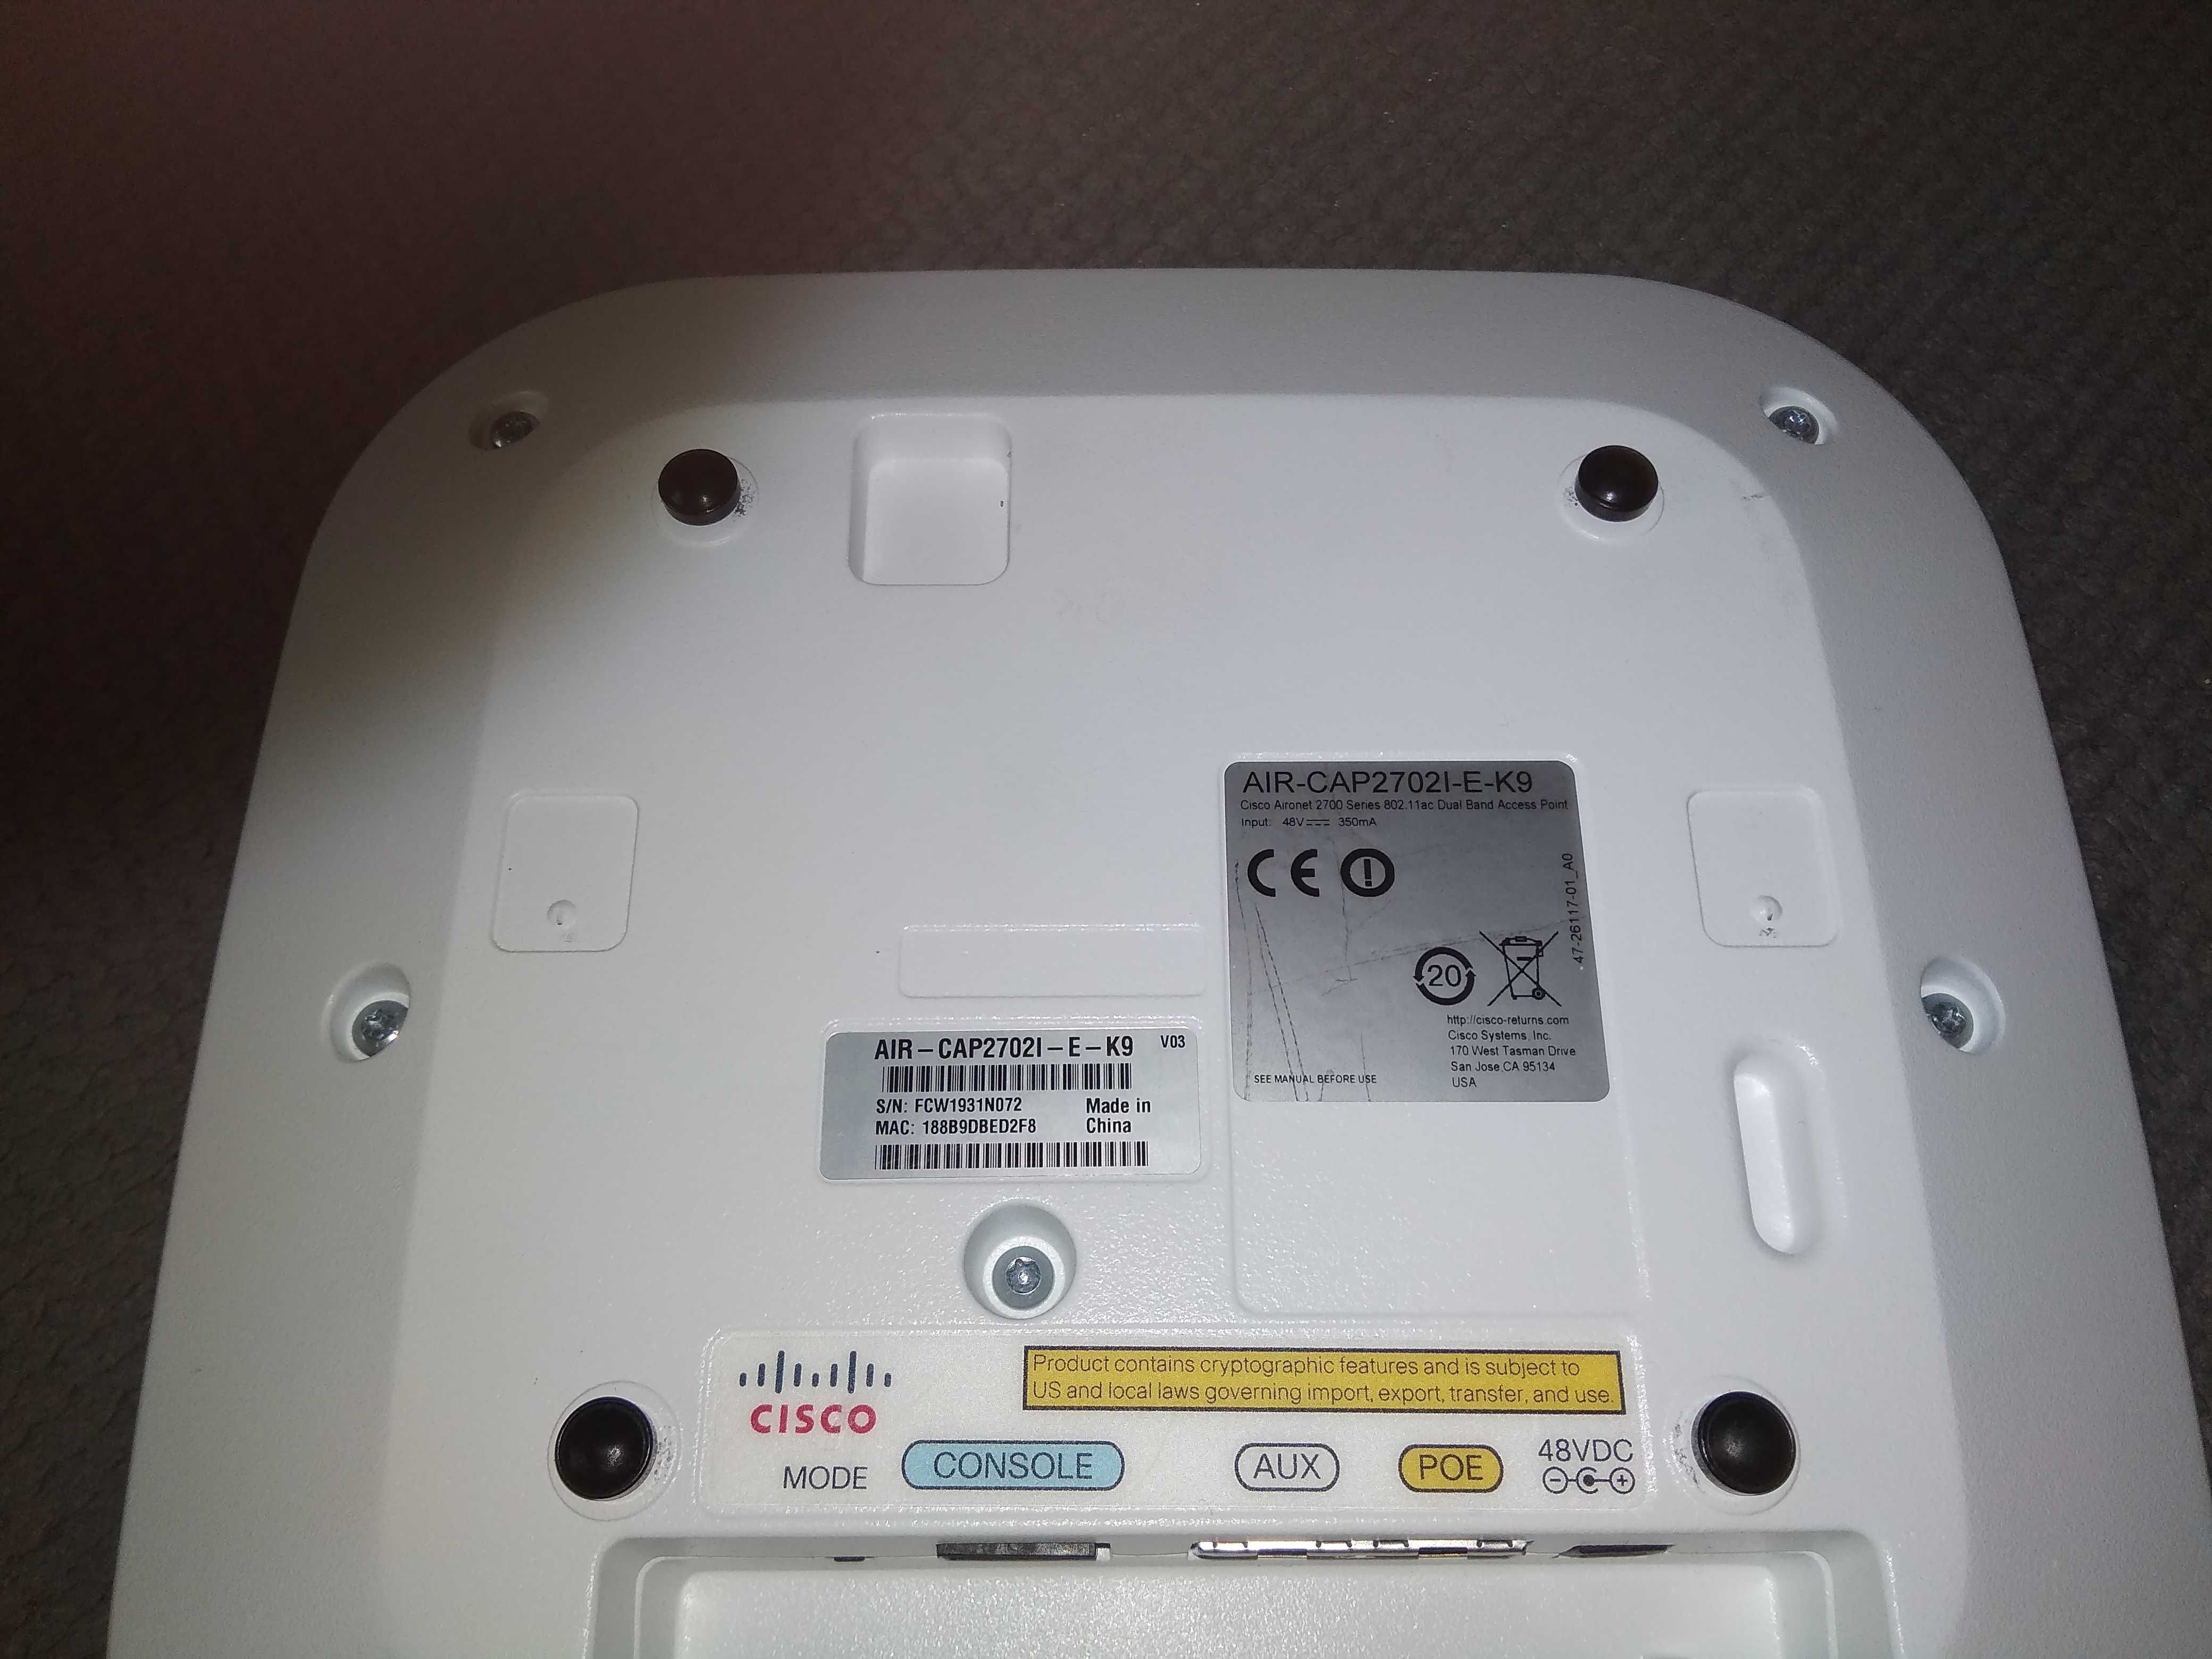 Cisco Access Point (AIR-CAP2702I-E-K9)